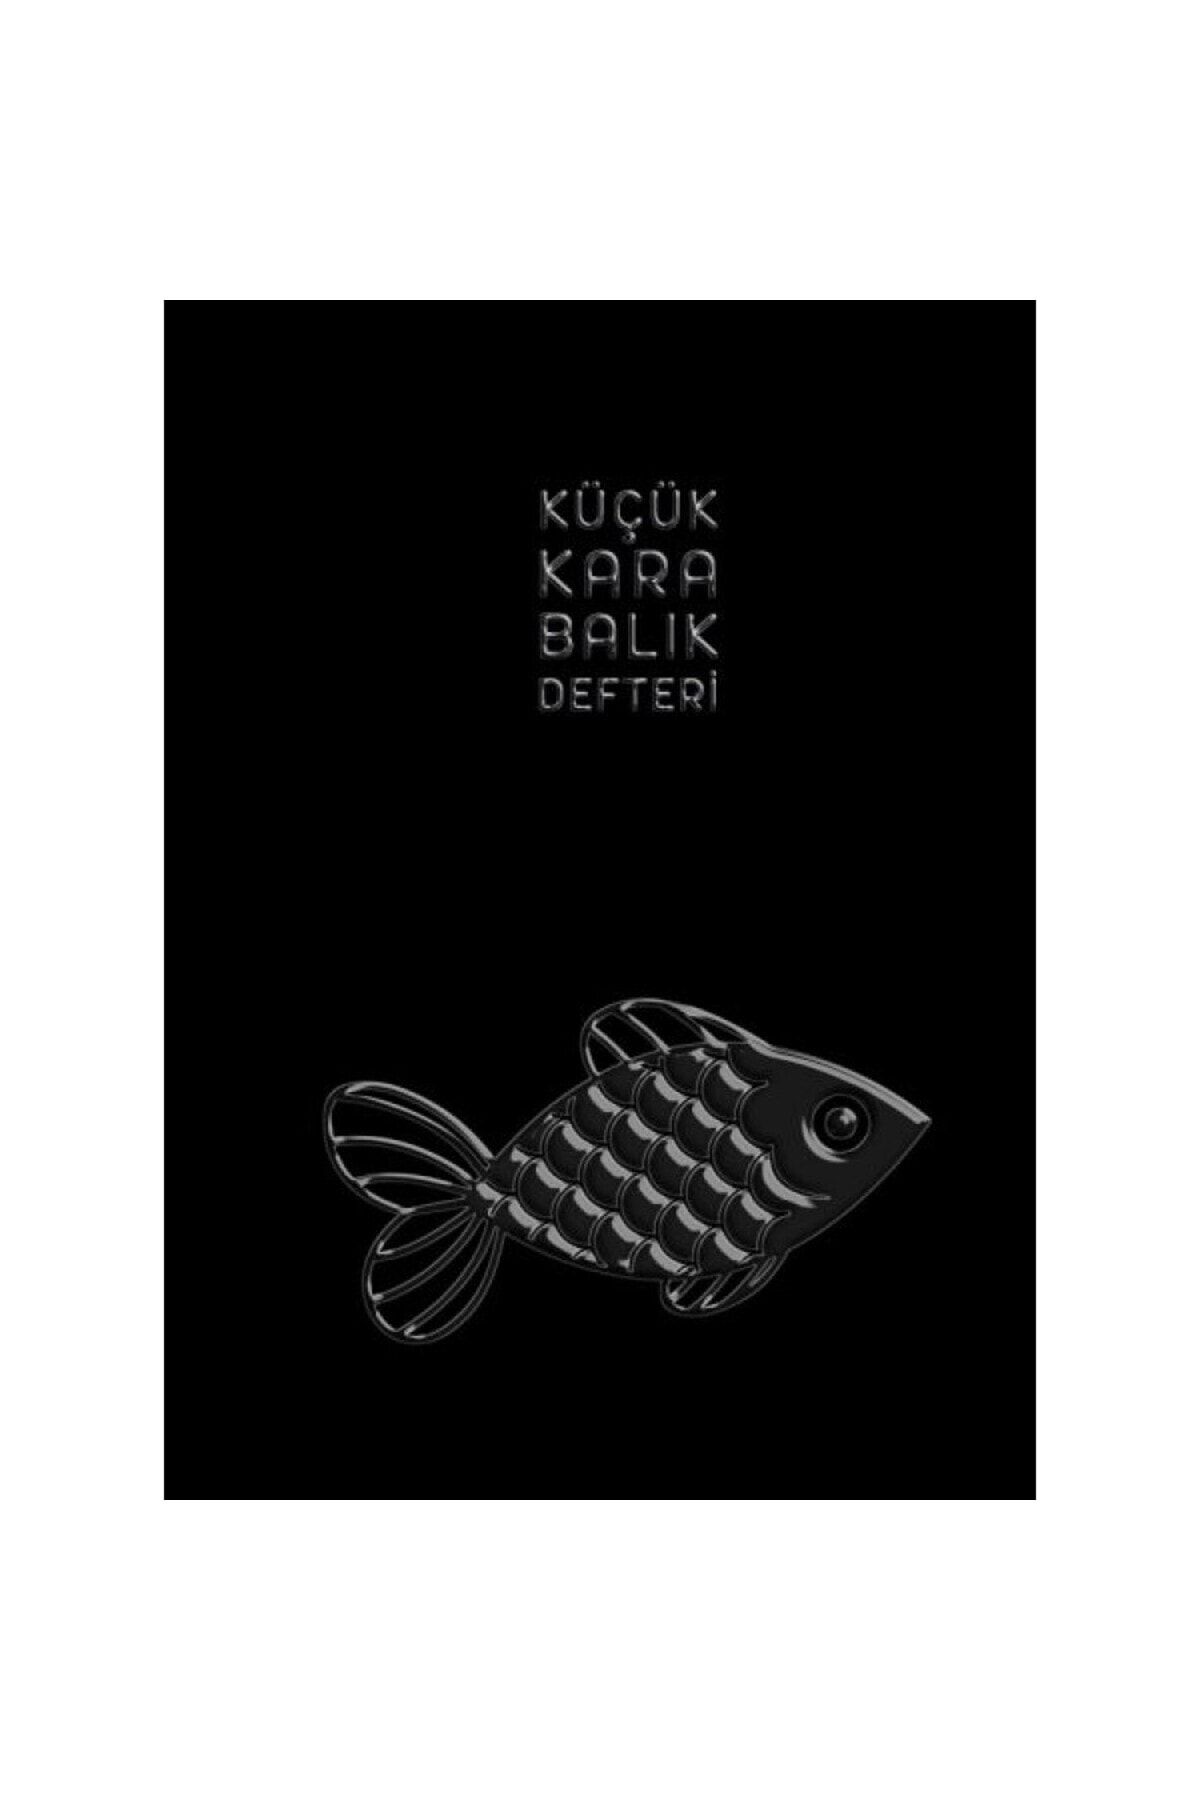 İthaki Yayınları Küçük Kara Balık Defteri